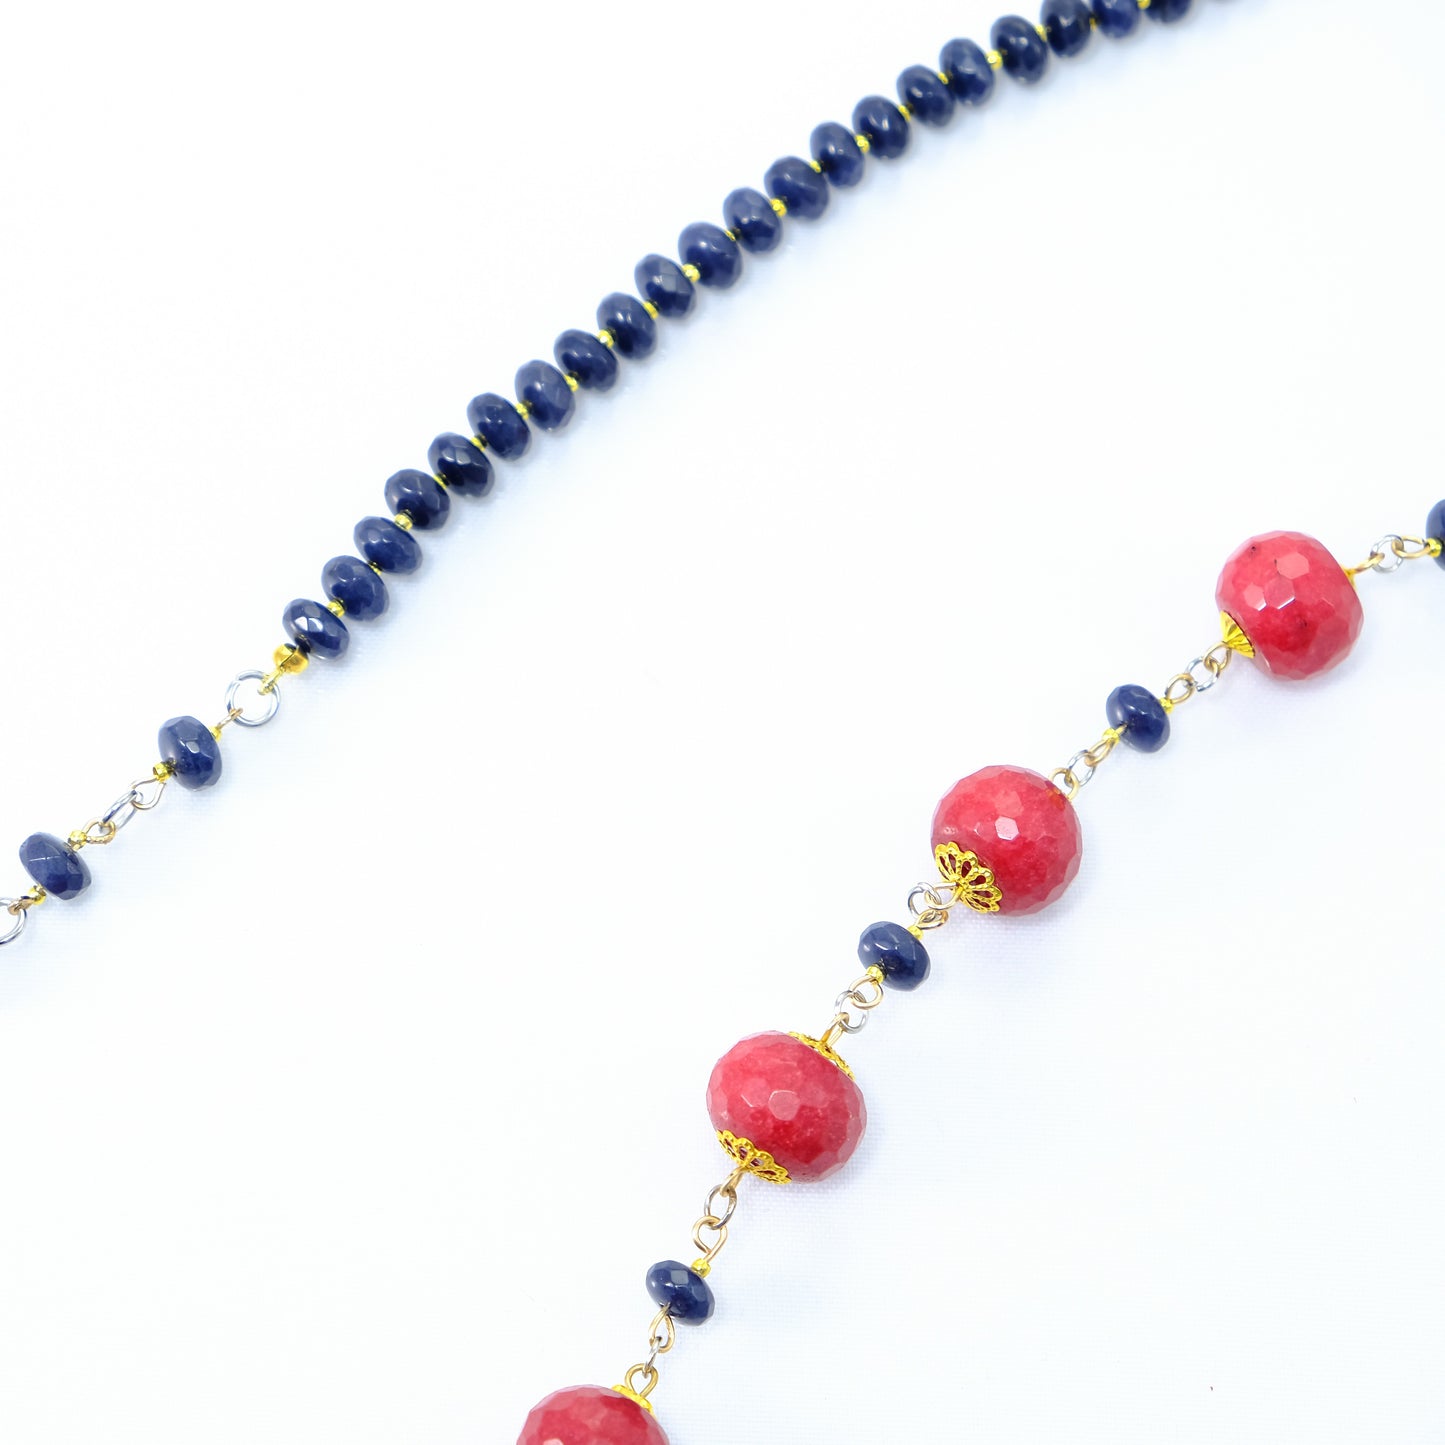 Collana LE PIETRE .061 perle agata rossa e lapislazzuli legate da metallo dorato.